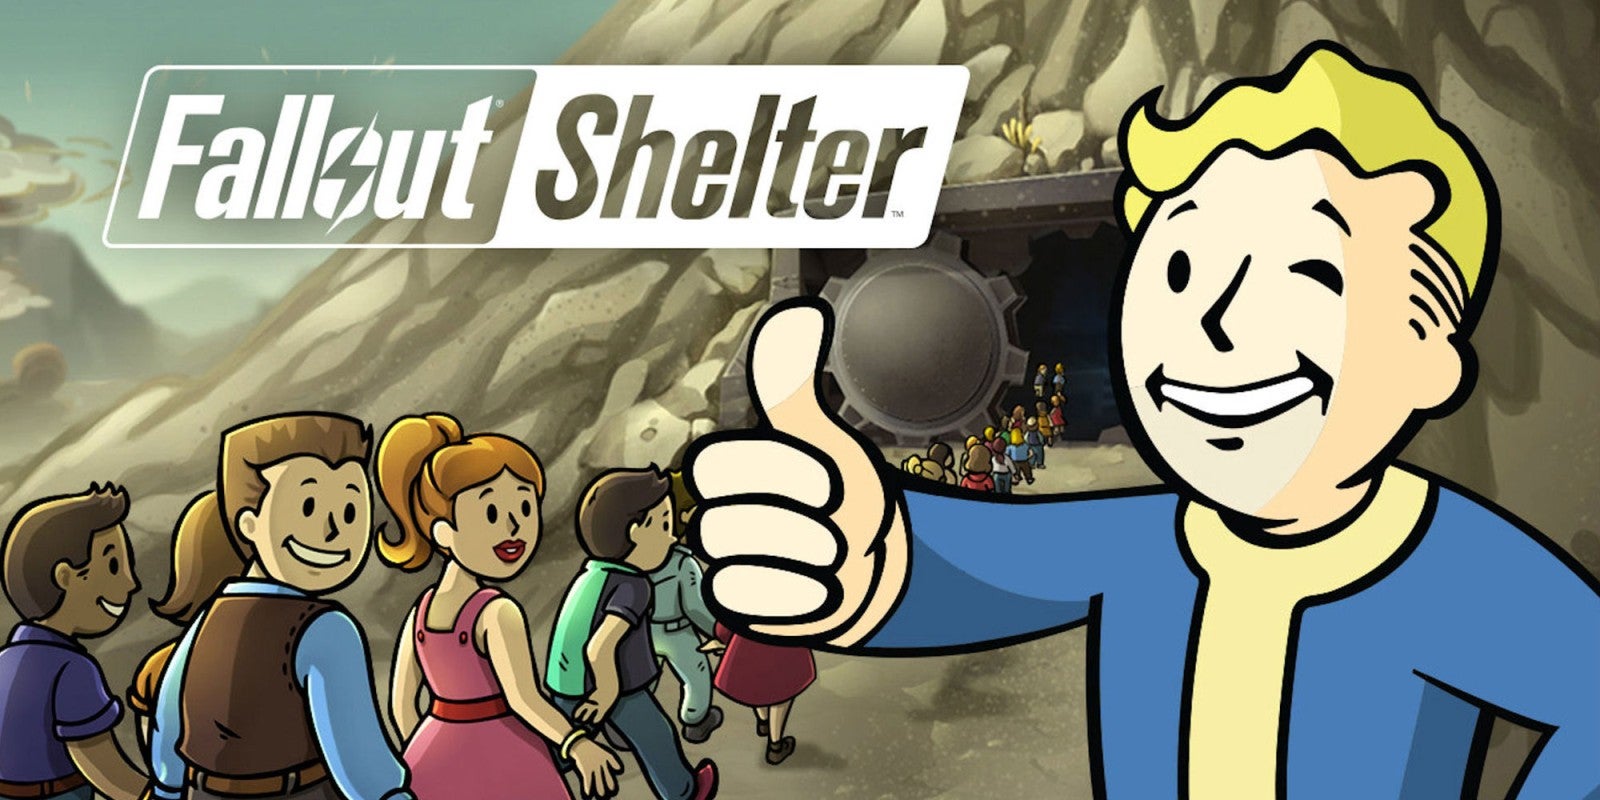 Immagine di Fallout Shelter ha generato 100 milioni di dollari dalla sua pubblicazione